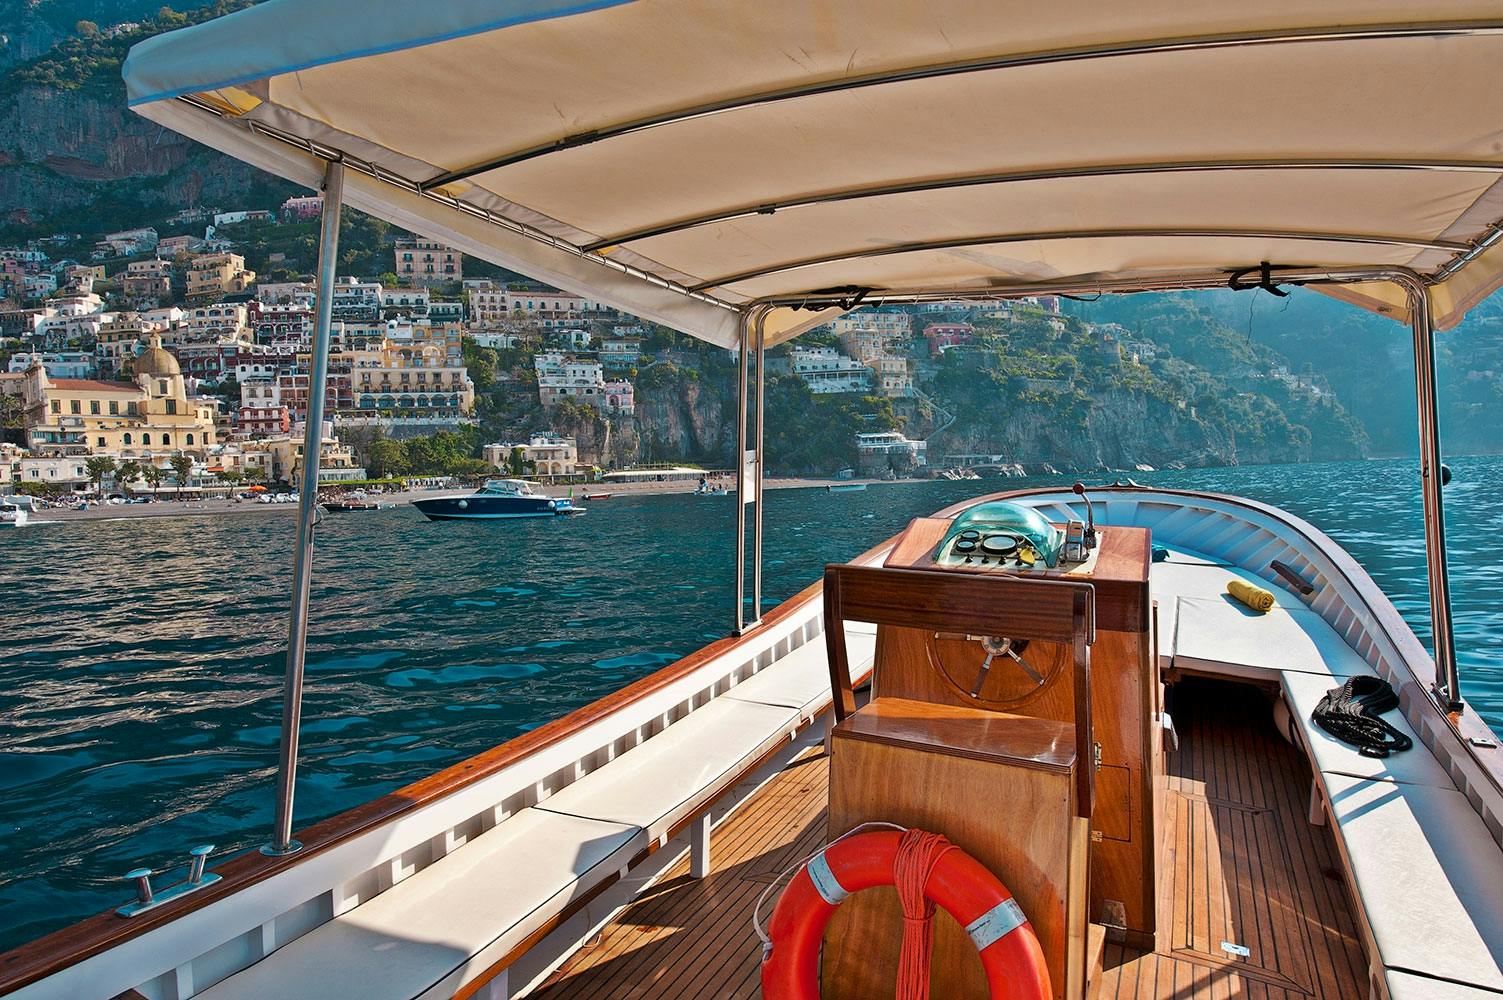 Excursão de barco de dia inteiro pela Costa Amalfitana saindo de Positano em grupo pequeno